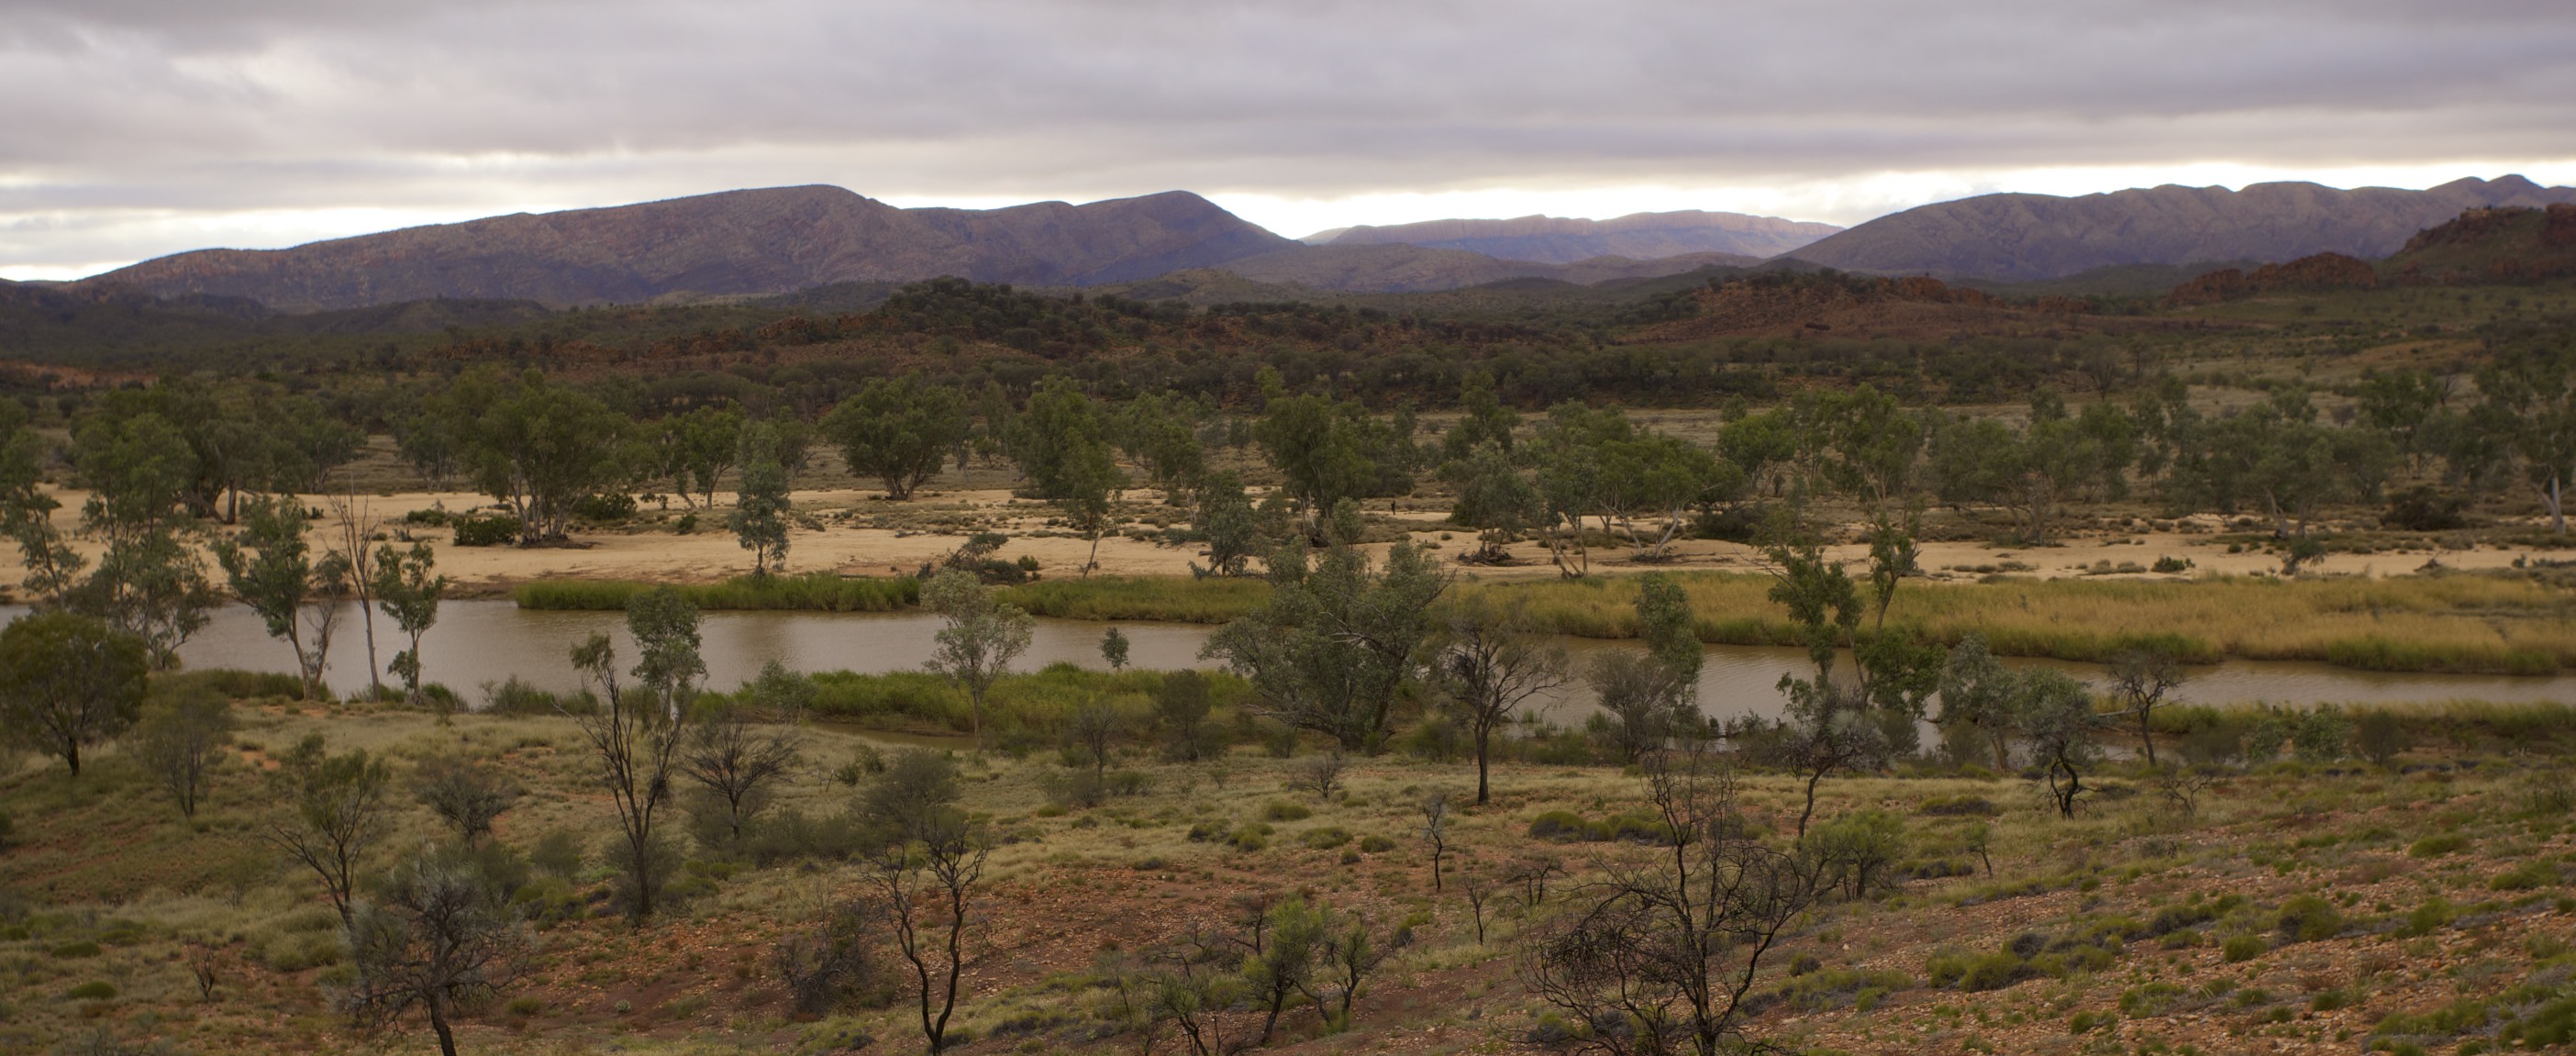 Le fleuve le plus vieux du monde suit son cours en faisant des détours sinueux au beau milieu de l’Australie. © BRJ Inc., Flickr